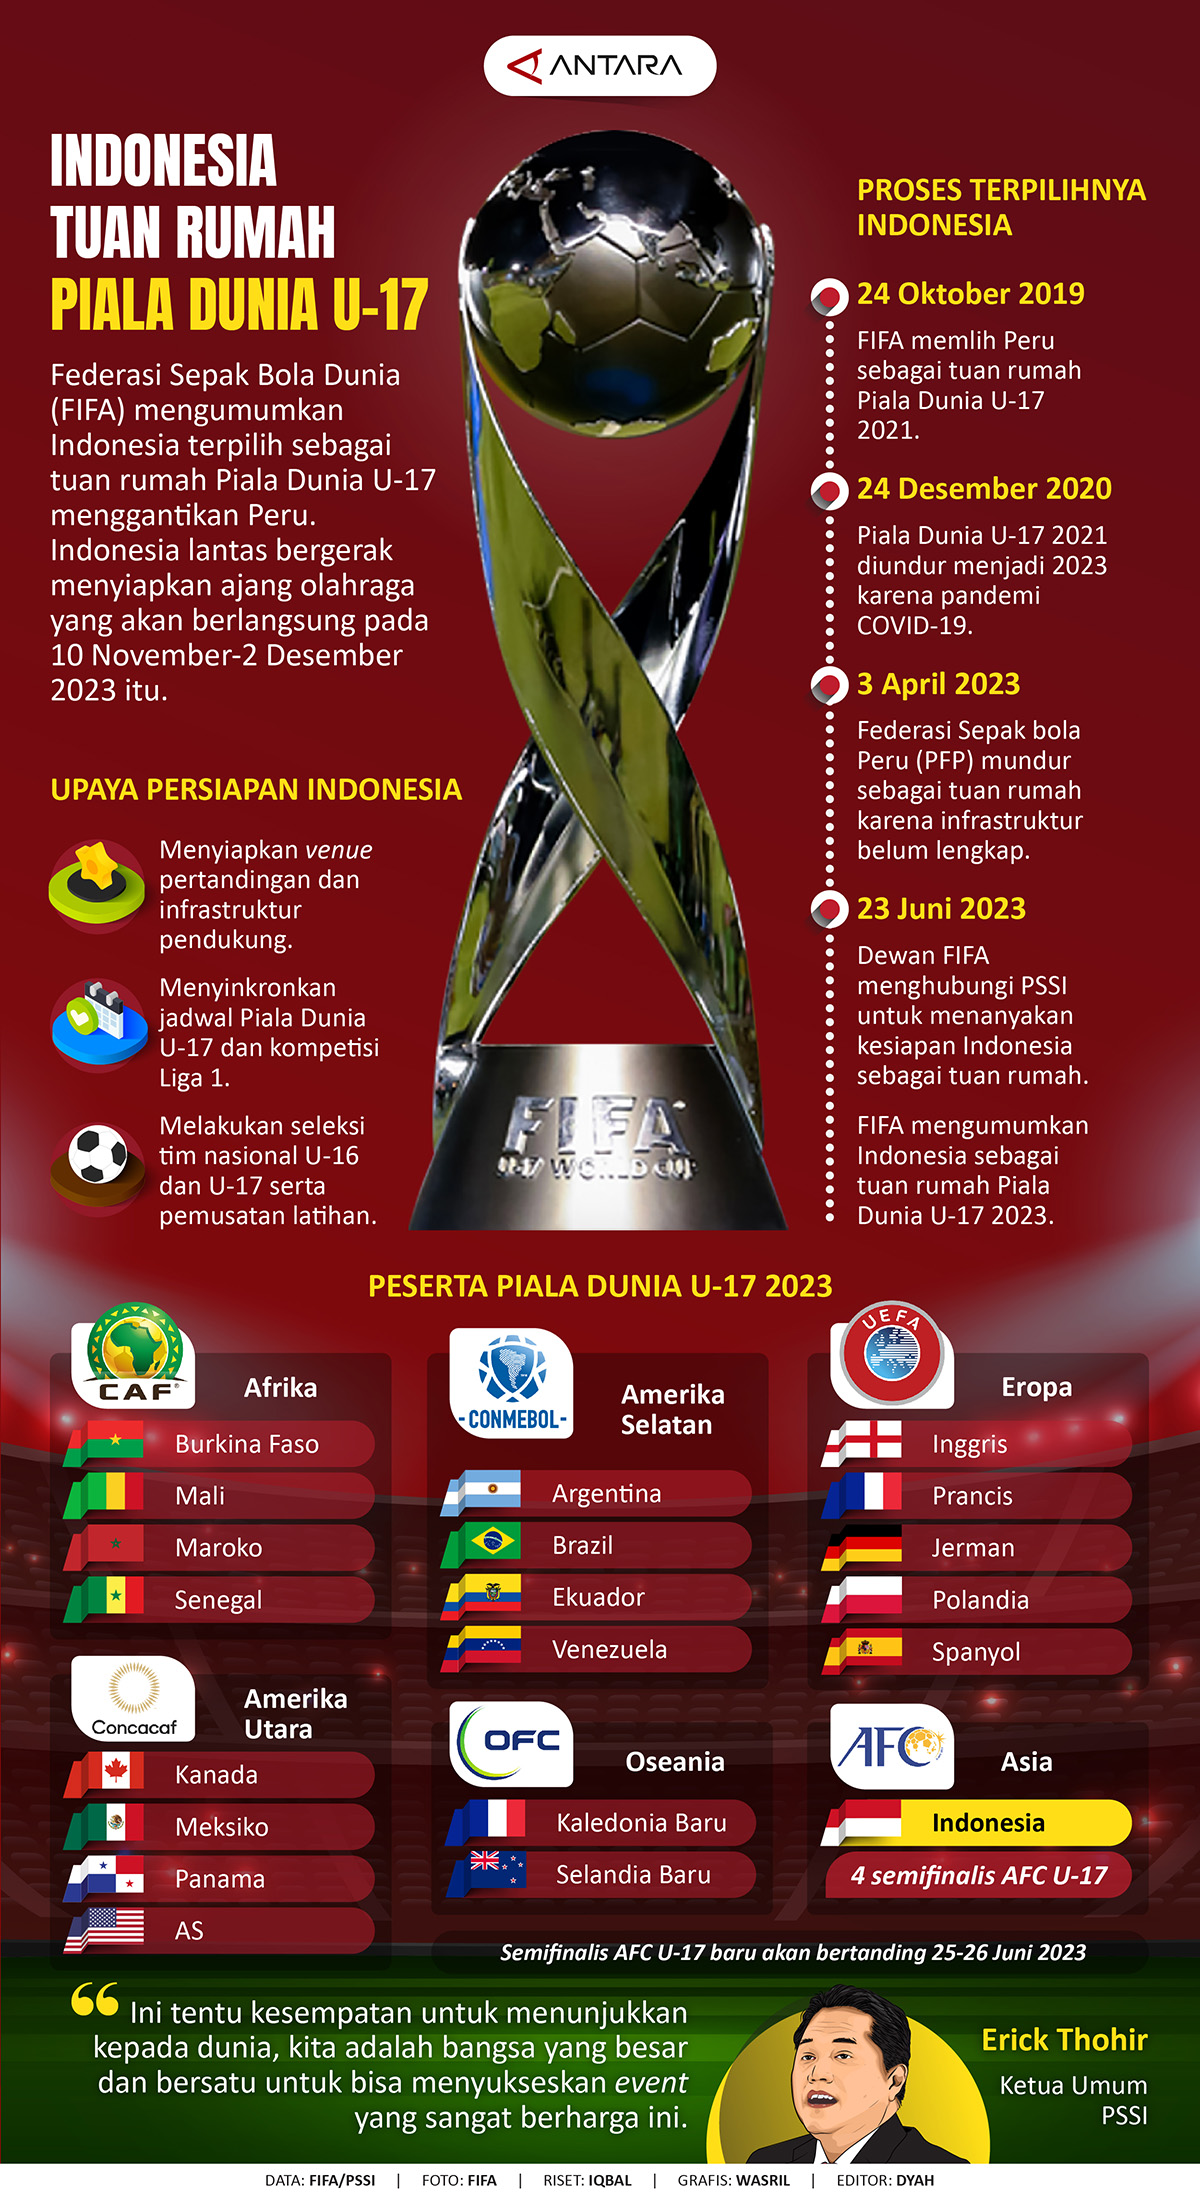 Info Grafis Indonesia Host Piala Dunia U17, Ini Daftar Pesertanya